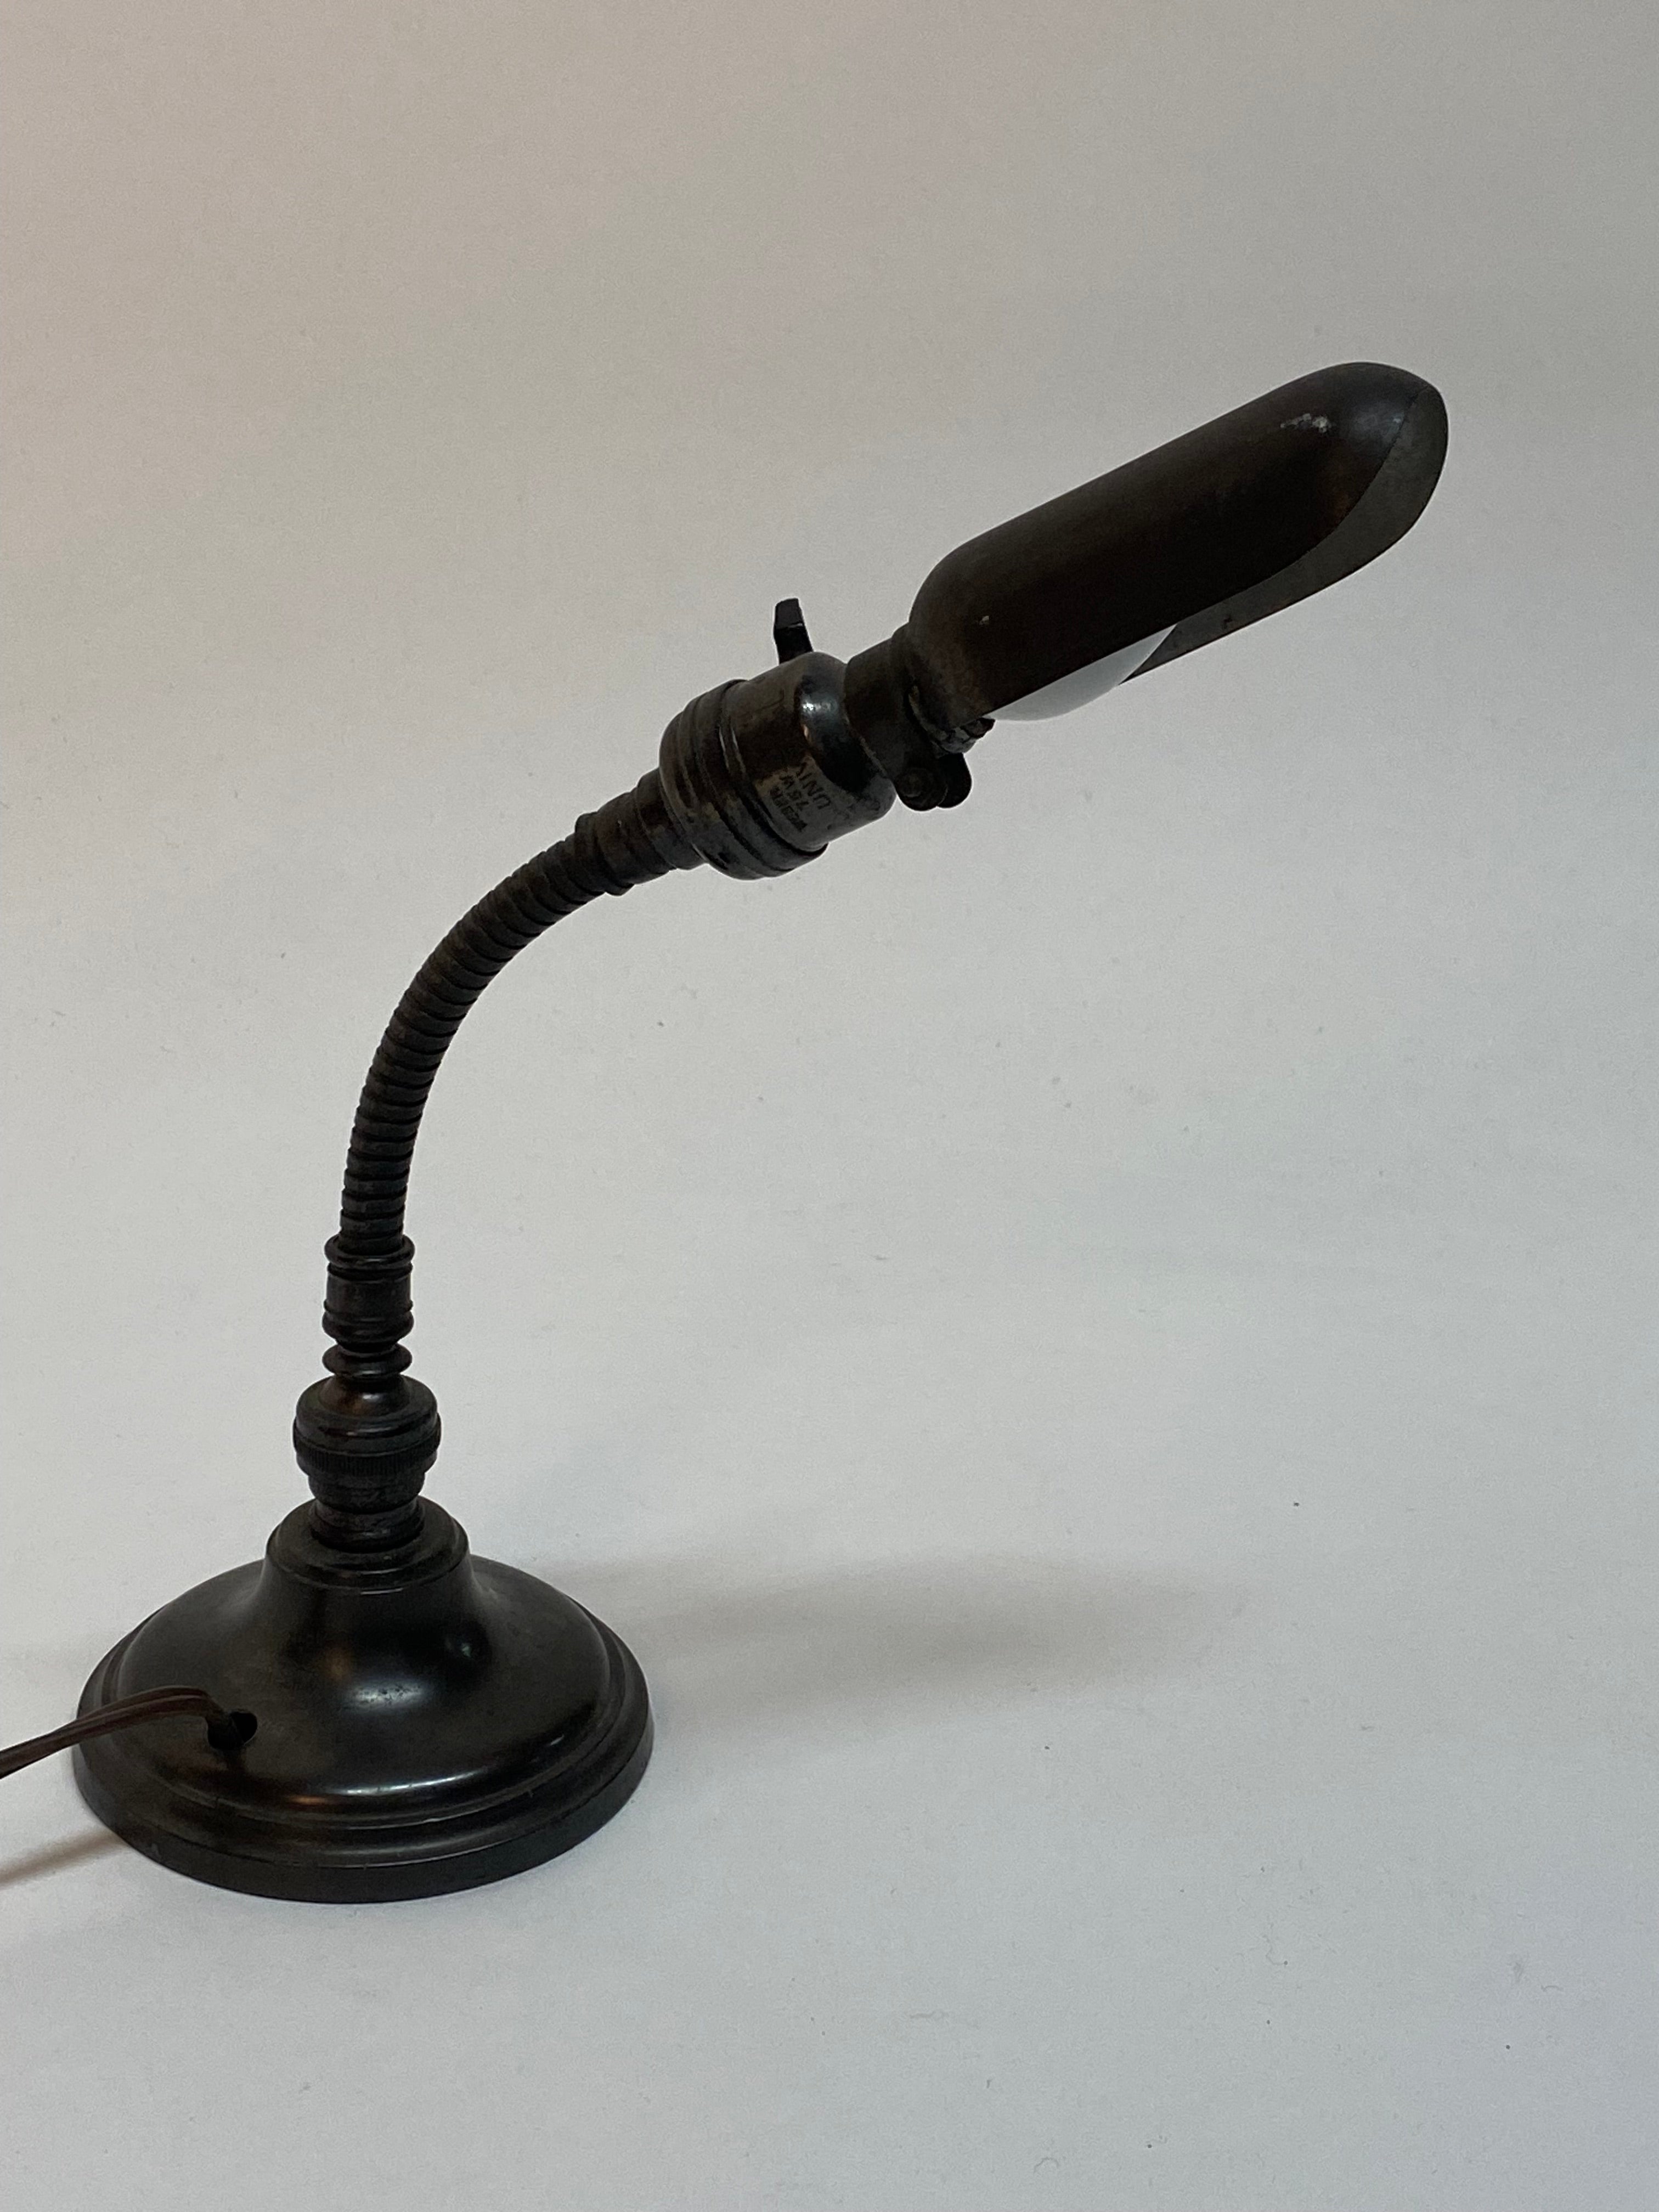 Eine großartige kleine Lampe, die auch den kleinsten Bereich hell erleuchtet. Mini-Arbeitsleuchte im Hubbell-Stil mit rundem, beschwertem Sockel und verstellbarem Schwanenhals. Circa 1920-30. Guter Betriebszustand mit alters- und gebrauchsbedingten